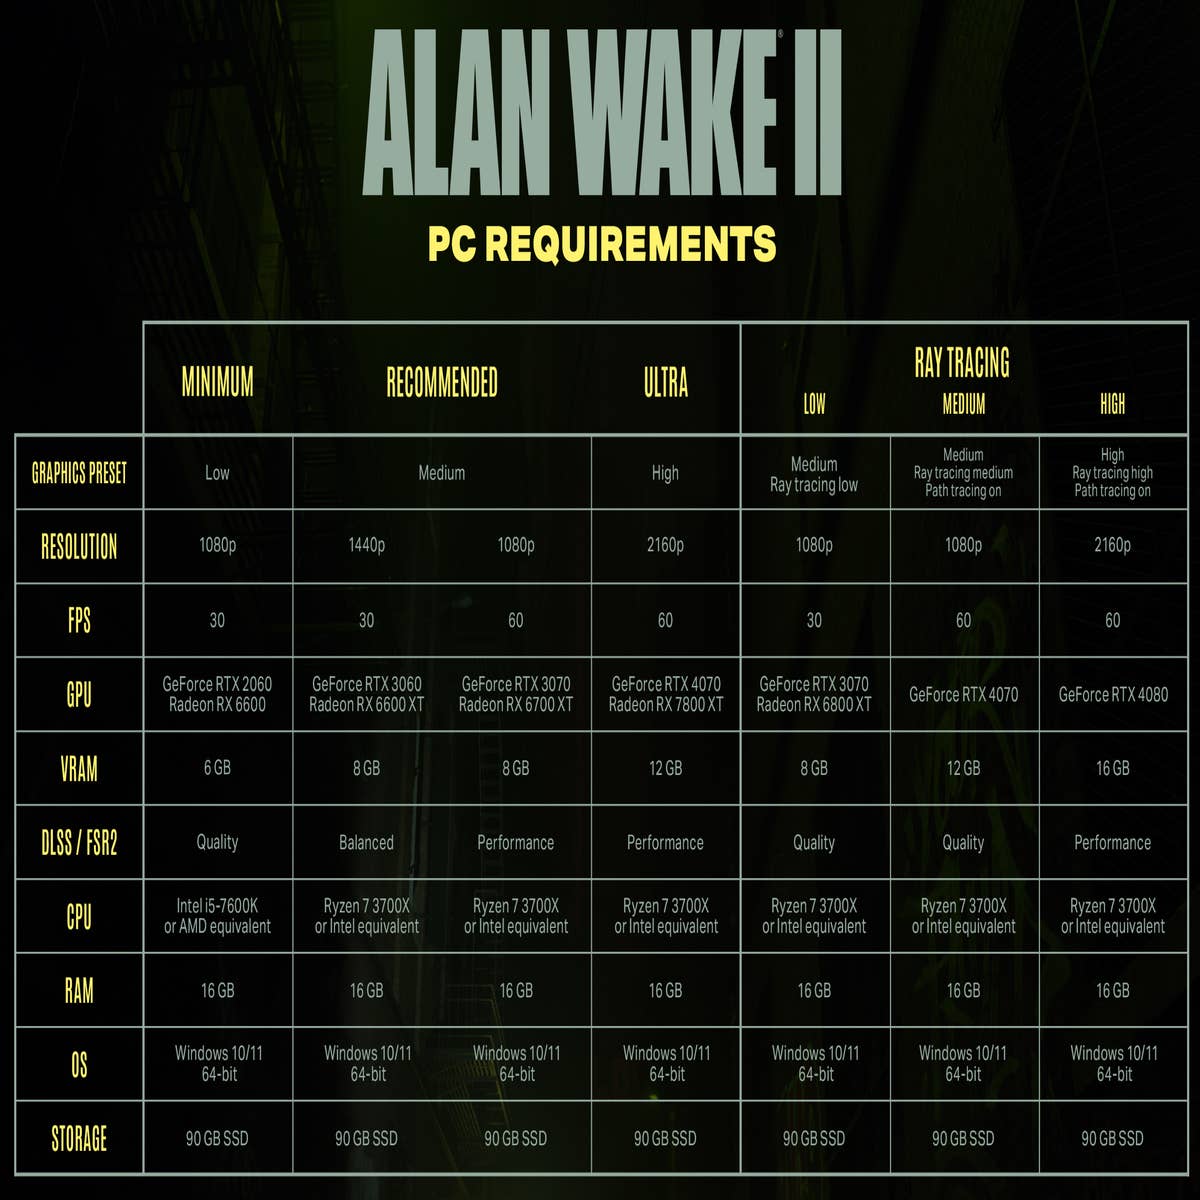 Alan Wake 2 profundiza en las diferencias entre sus dos protagonistas -  Vandal